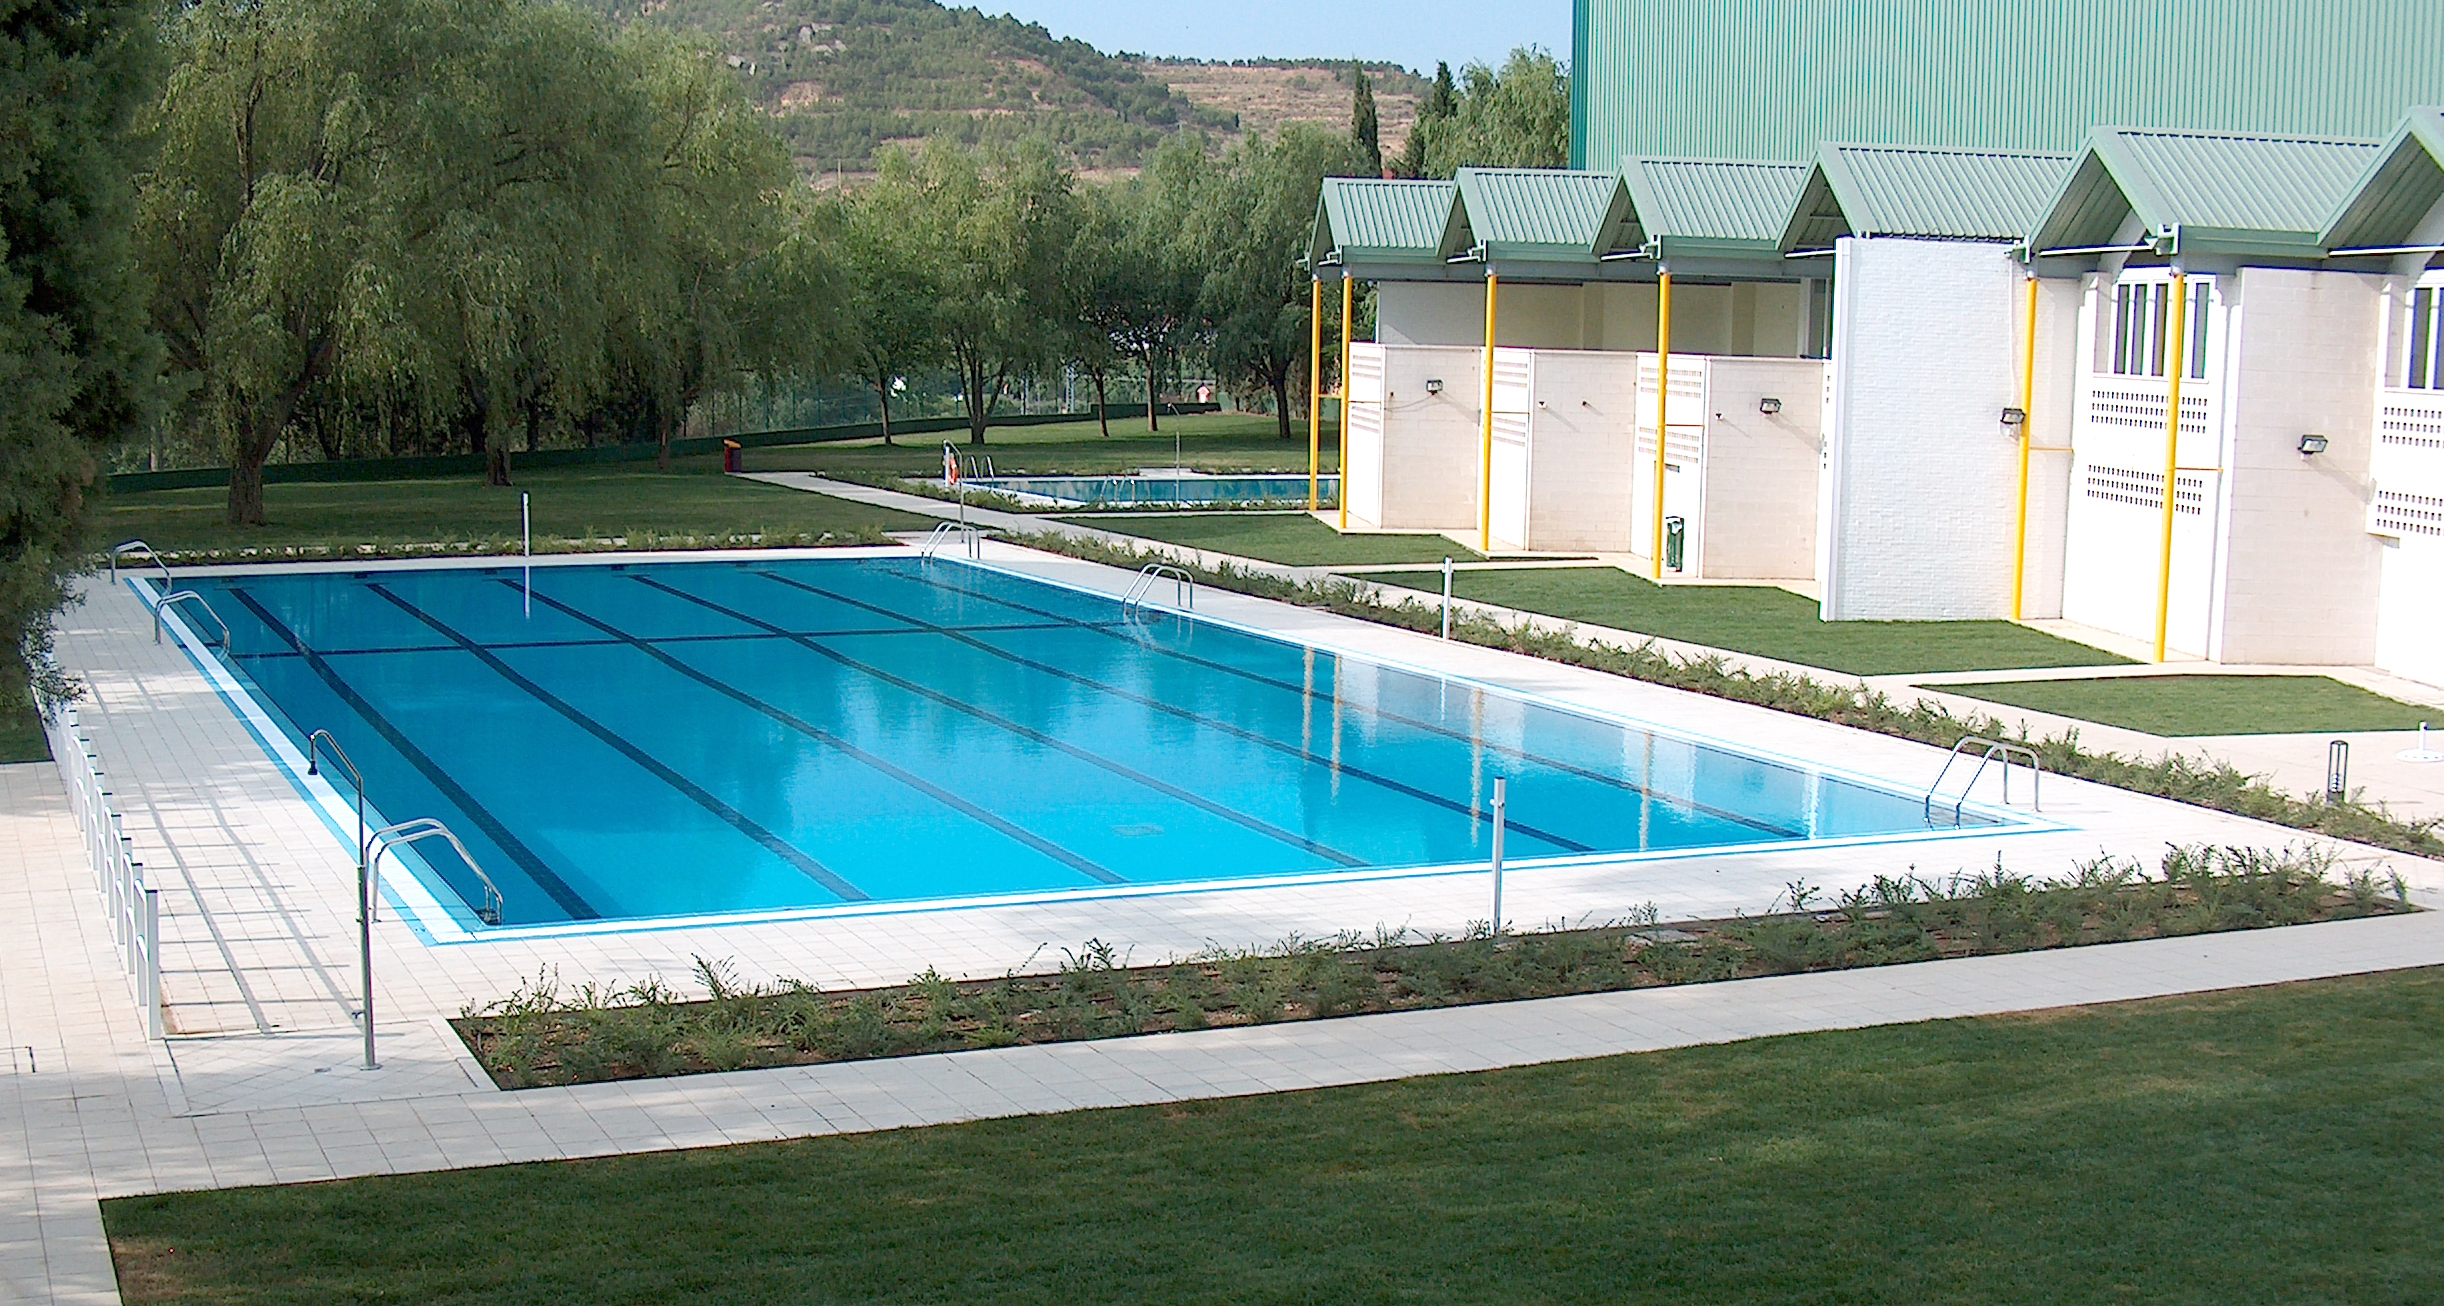 GRES ARAGON PISCINA PORCELANICO ALCANIZ 42 - Piezas especiales piscina deportiva